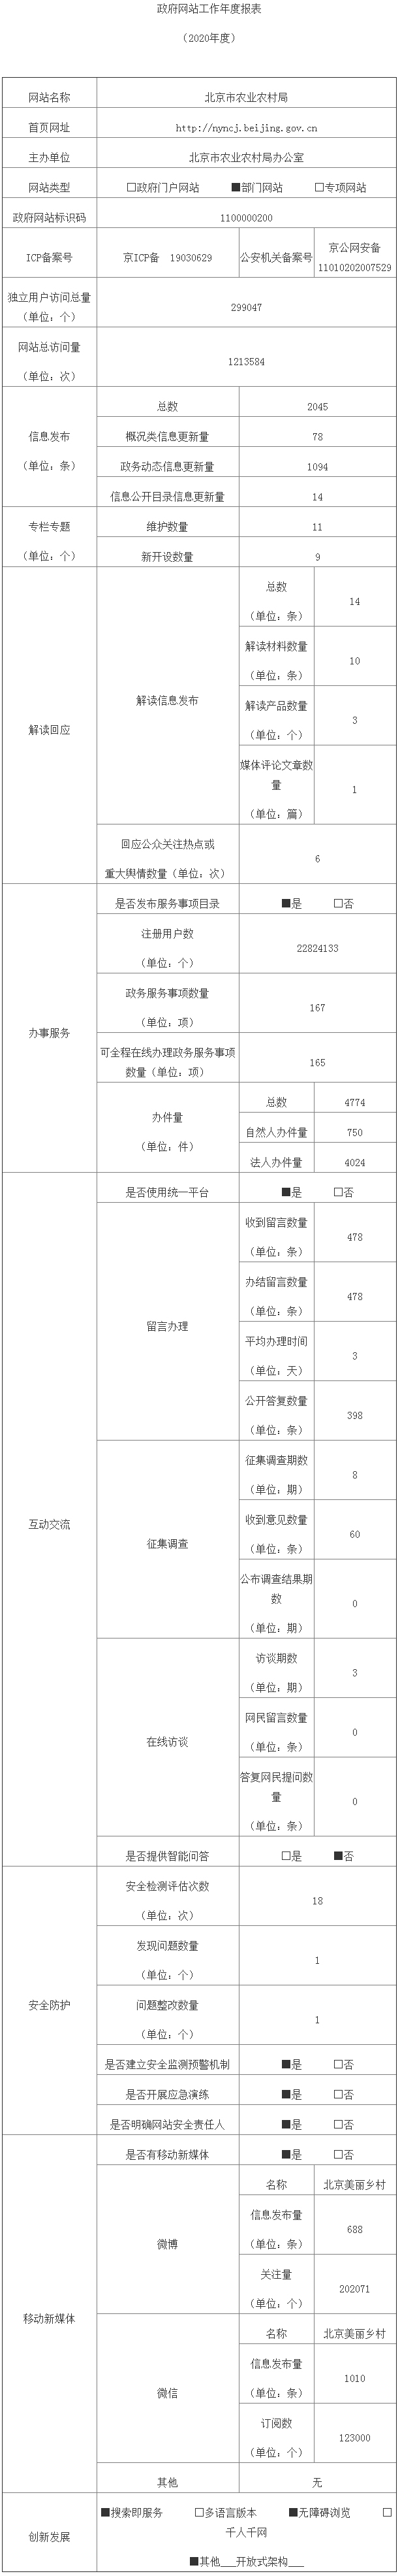 北京市農業農村局2020年政府網站年度工作報表